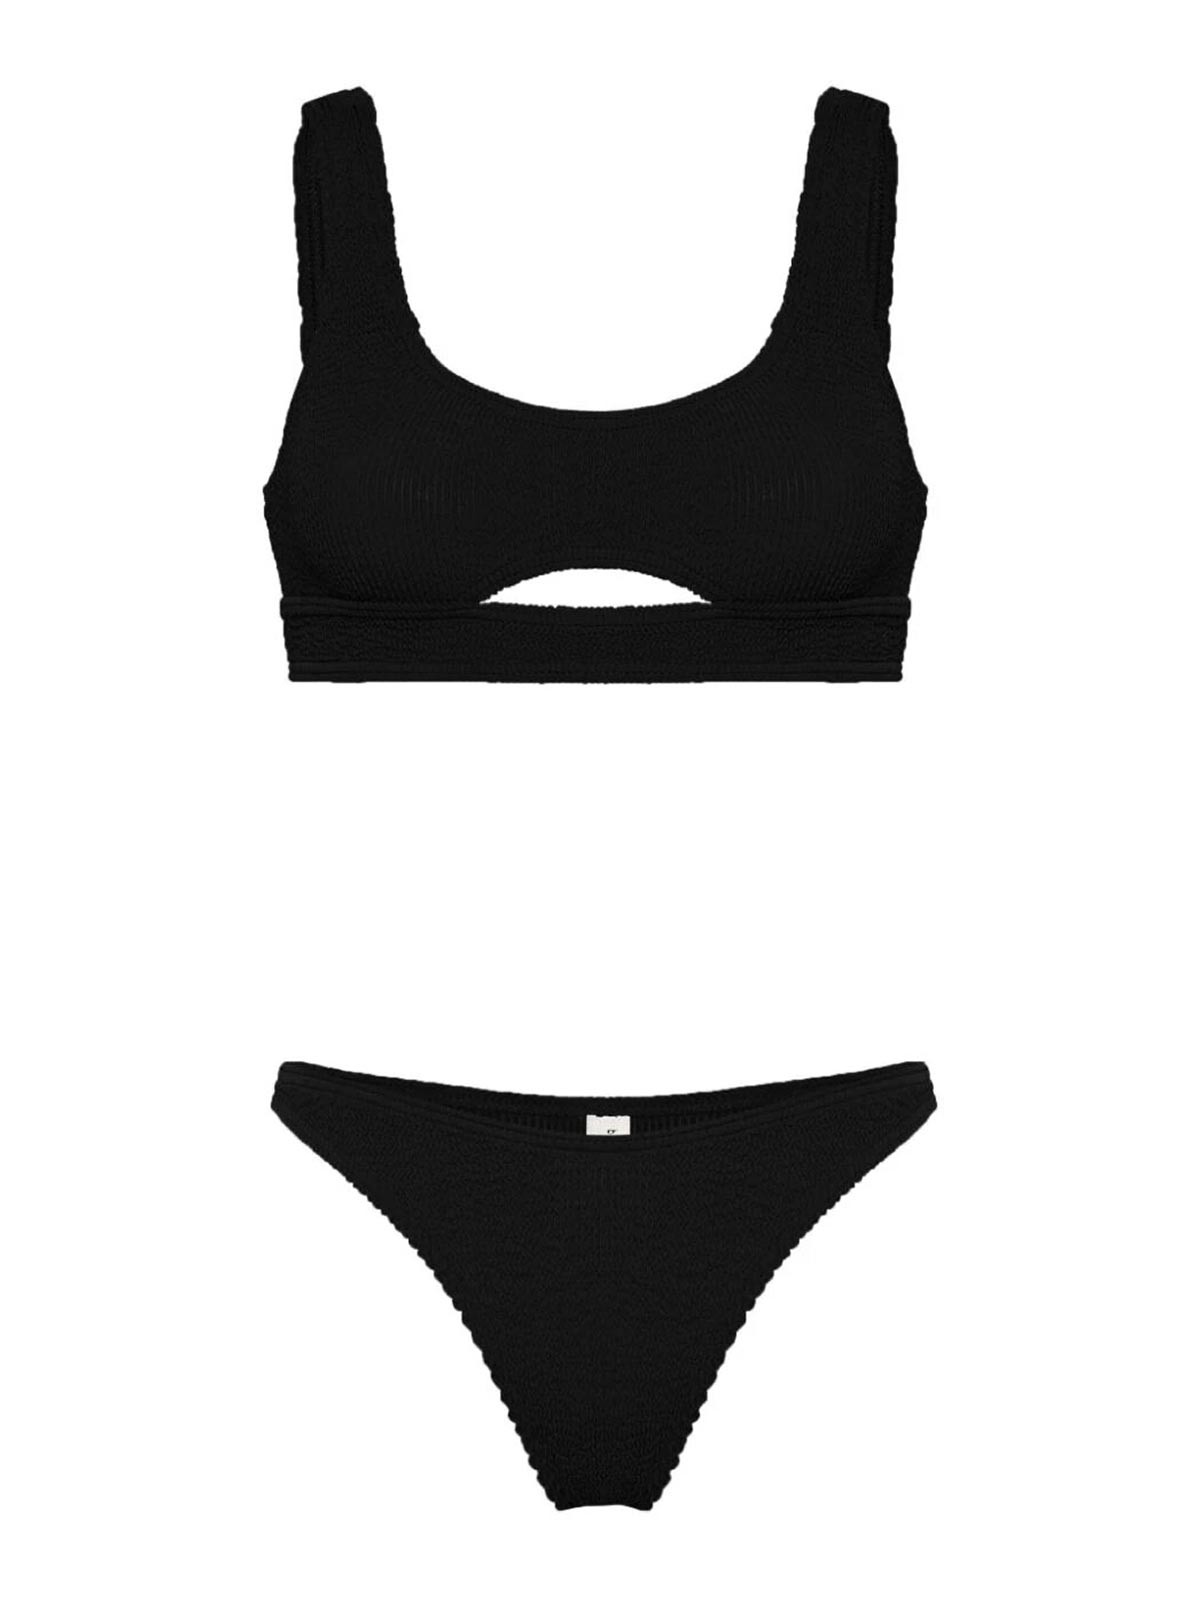 Bondeye Boundblack Bikini In Black